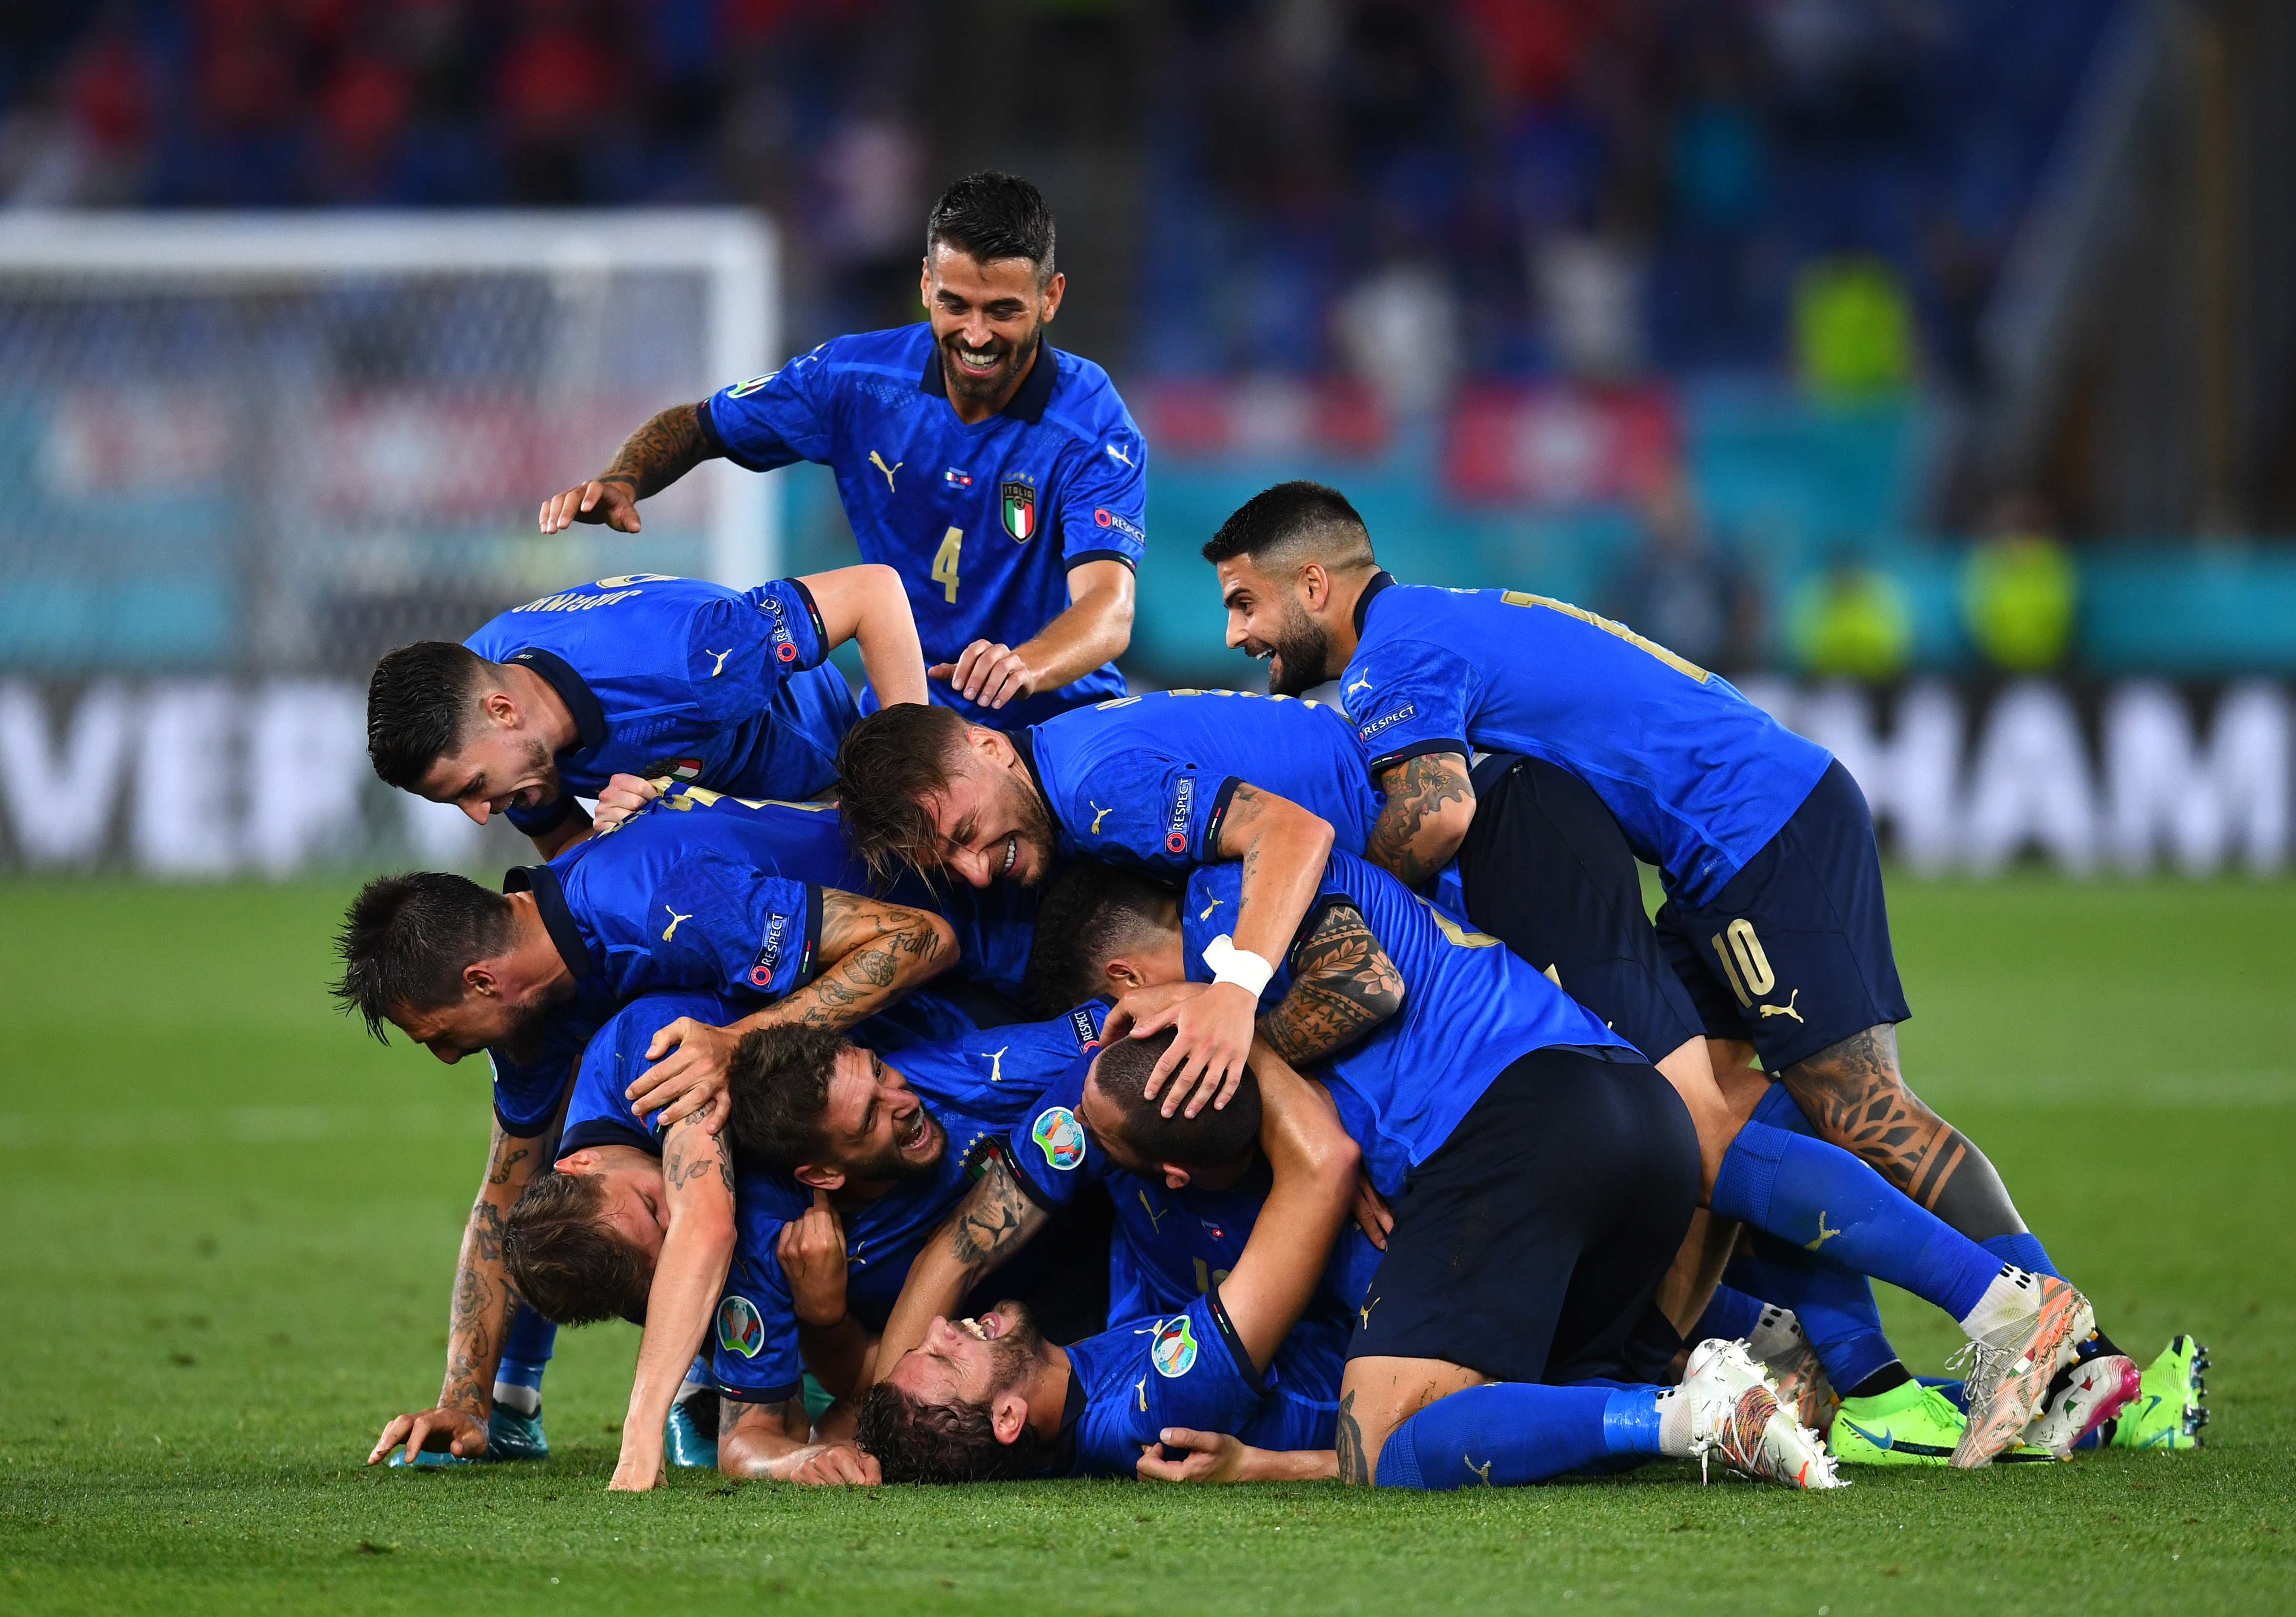 Itália repensou seu estilo e Alemanha renovou de verdade; são exceções